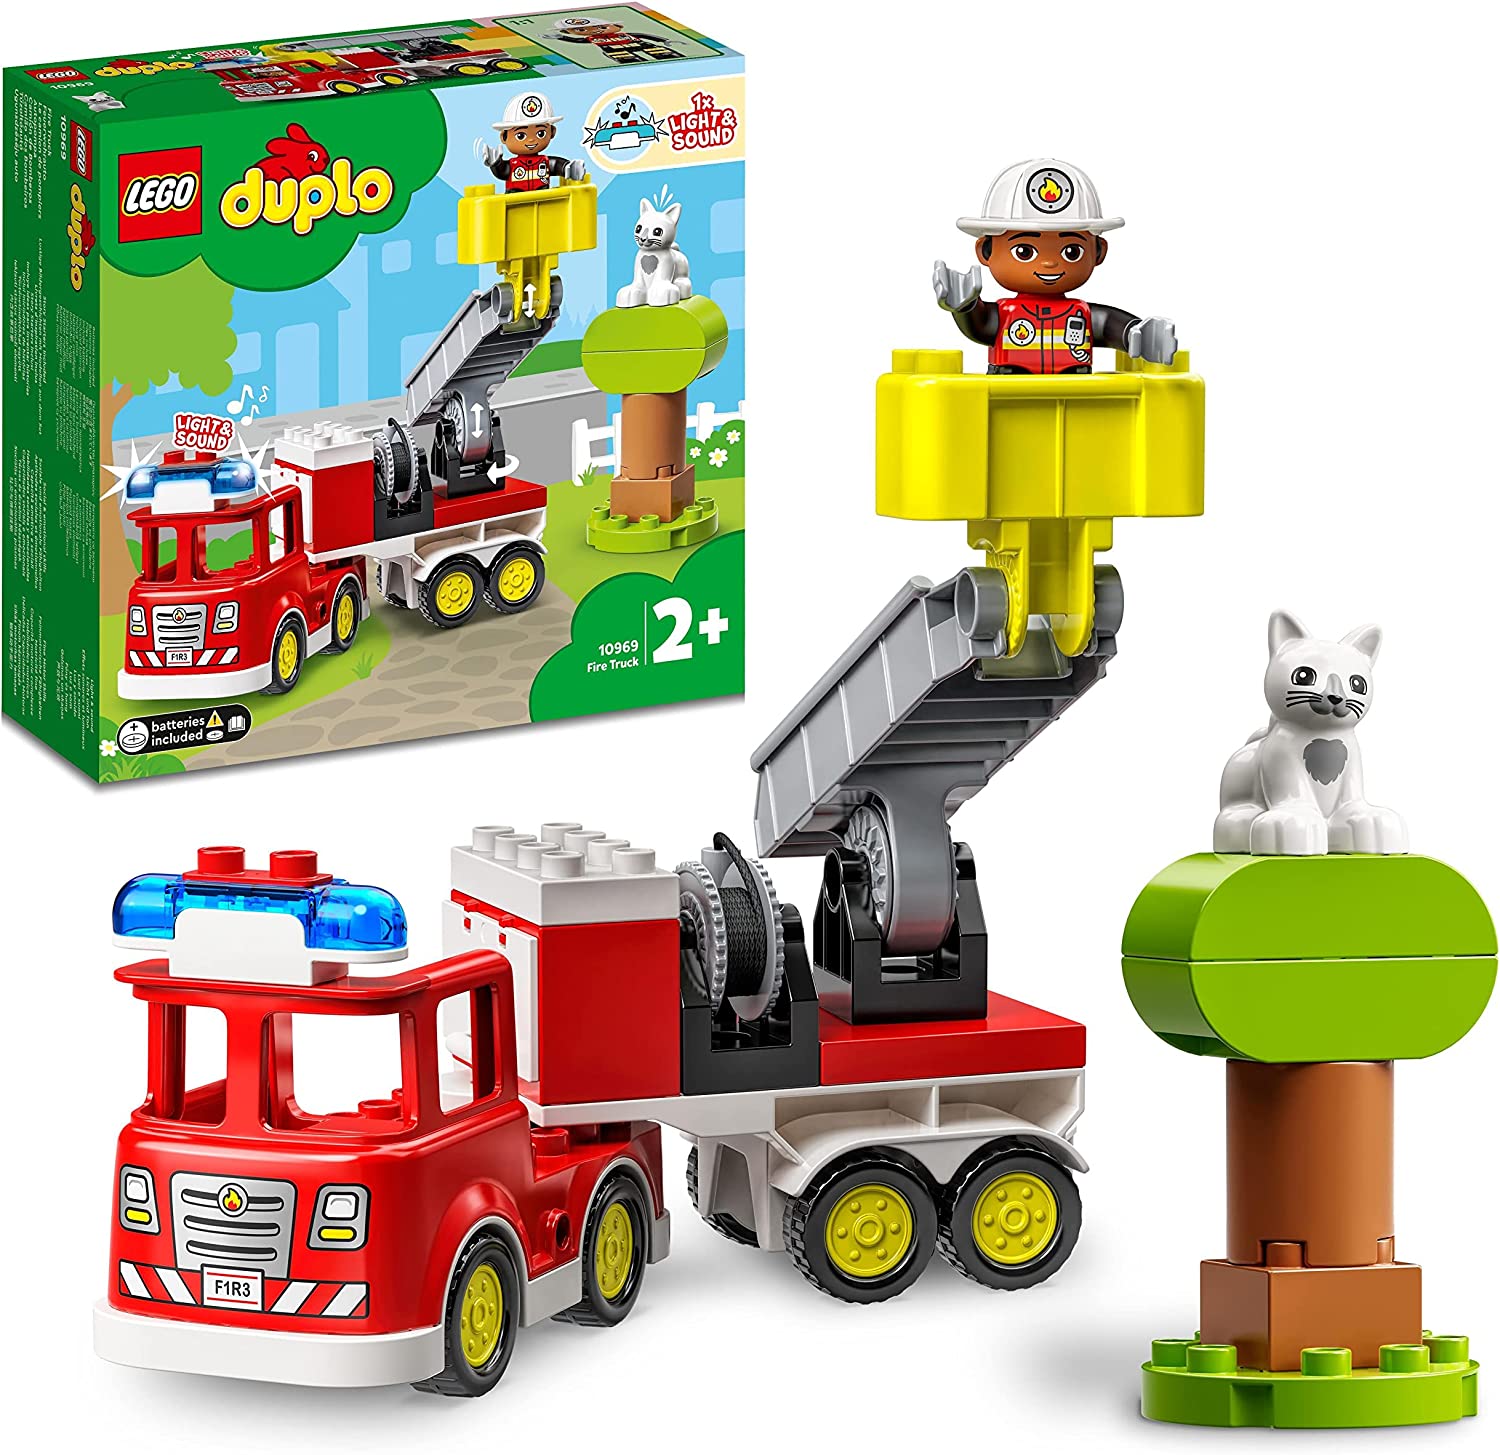 LEGO 10969 DUPLO Town Brandbil Lastbil med ljus och siren, Innehåller brandman & katt minifigurer, Pedagogiska leksaker för barn, Från 2 år